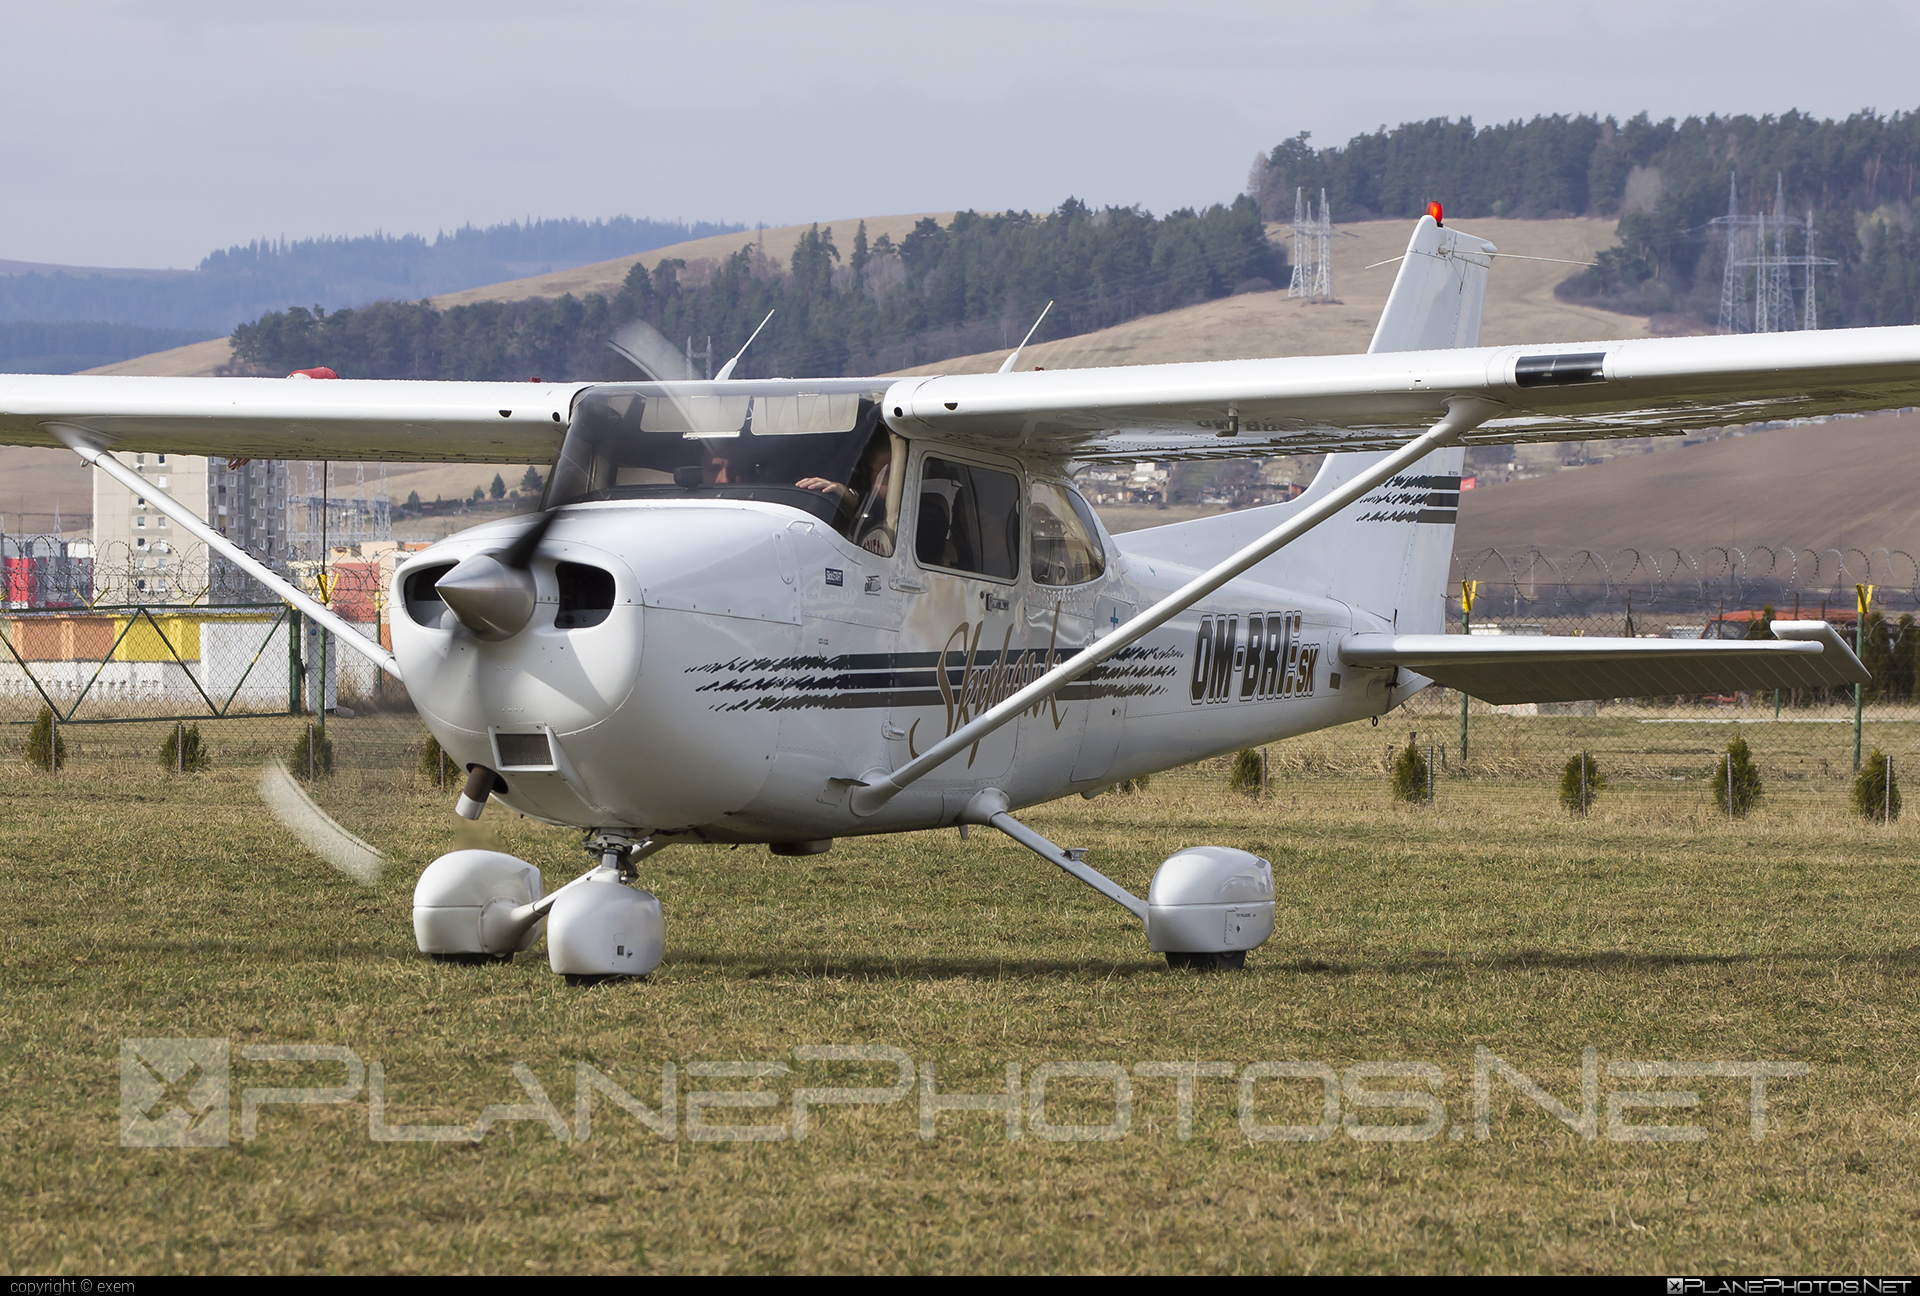 Cessna 172R Skyhawk II - OM-BRI operated by Private operator #cessna #cessna172 #cessna172r #cessna172rskyhawk #cessna172skyhawk #cessnaskyhawk #skyhawkii